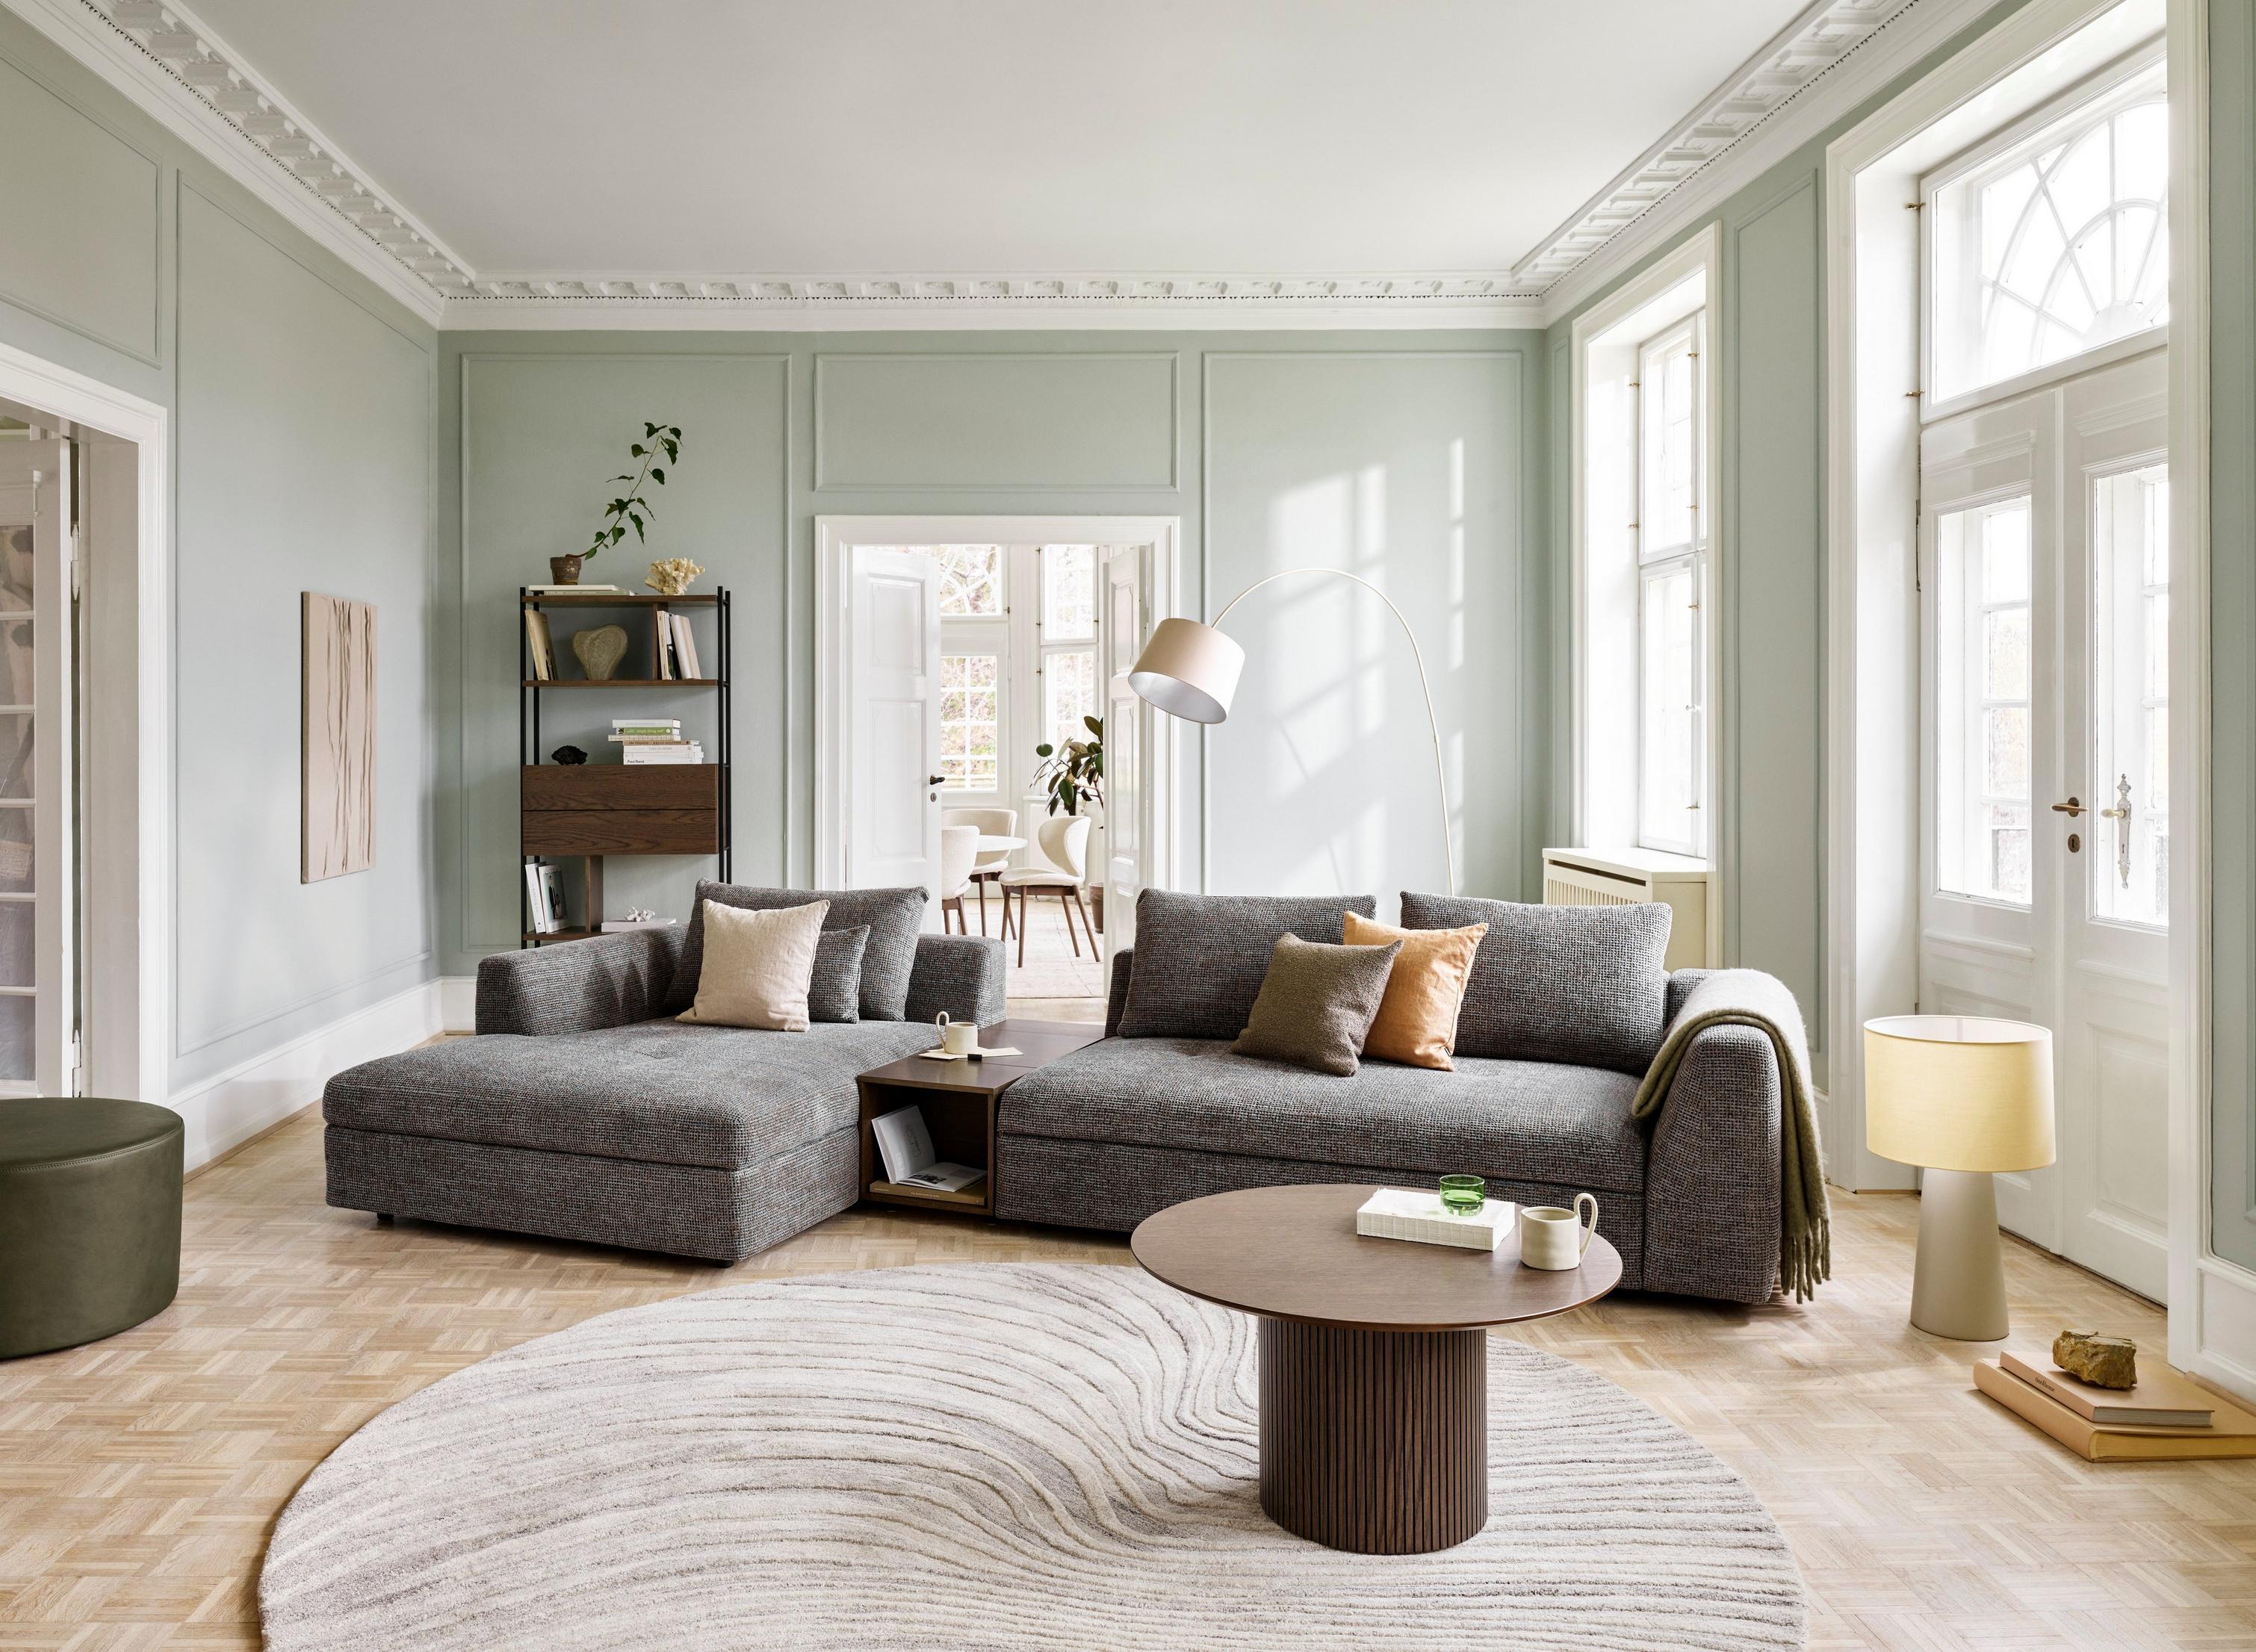 Spoločenský obývací priestor so sedačkou Bergamo s úložným priestorom.